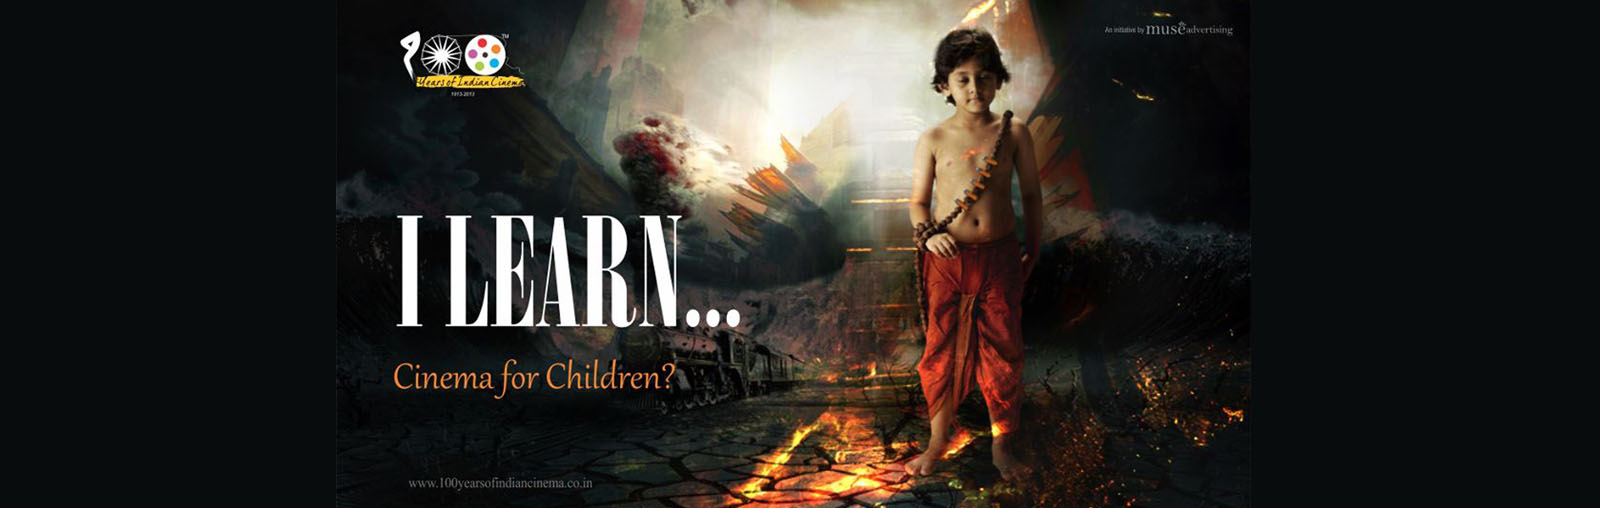 Cinema for Children by Manoj Mauryaa